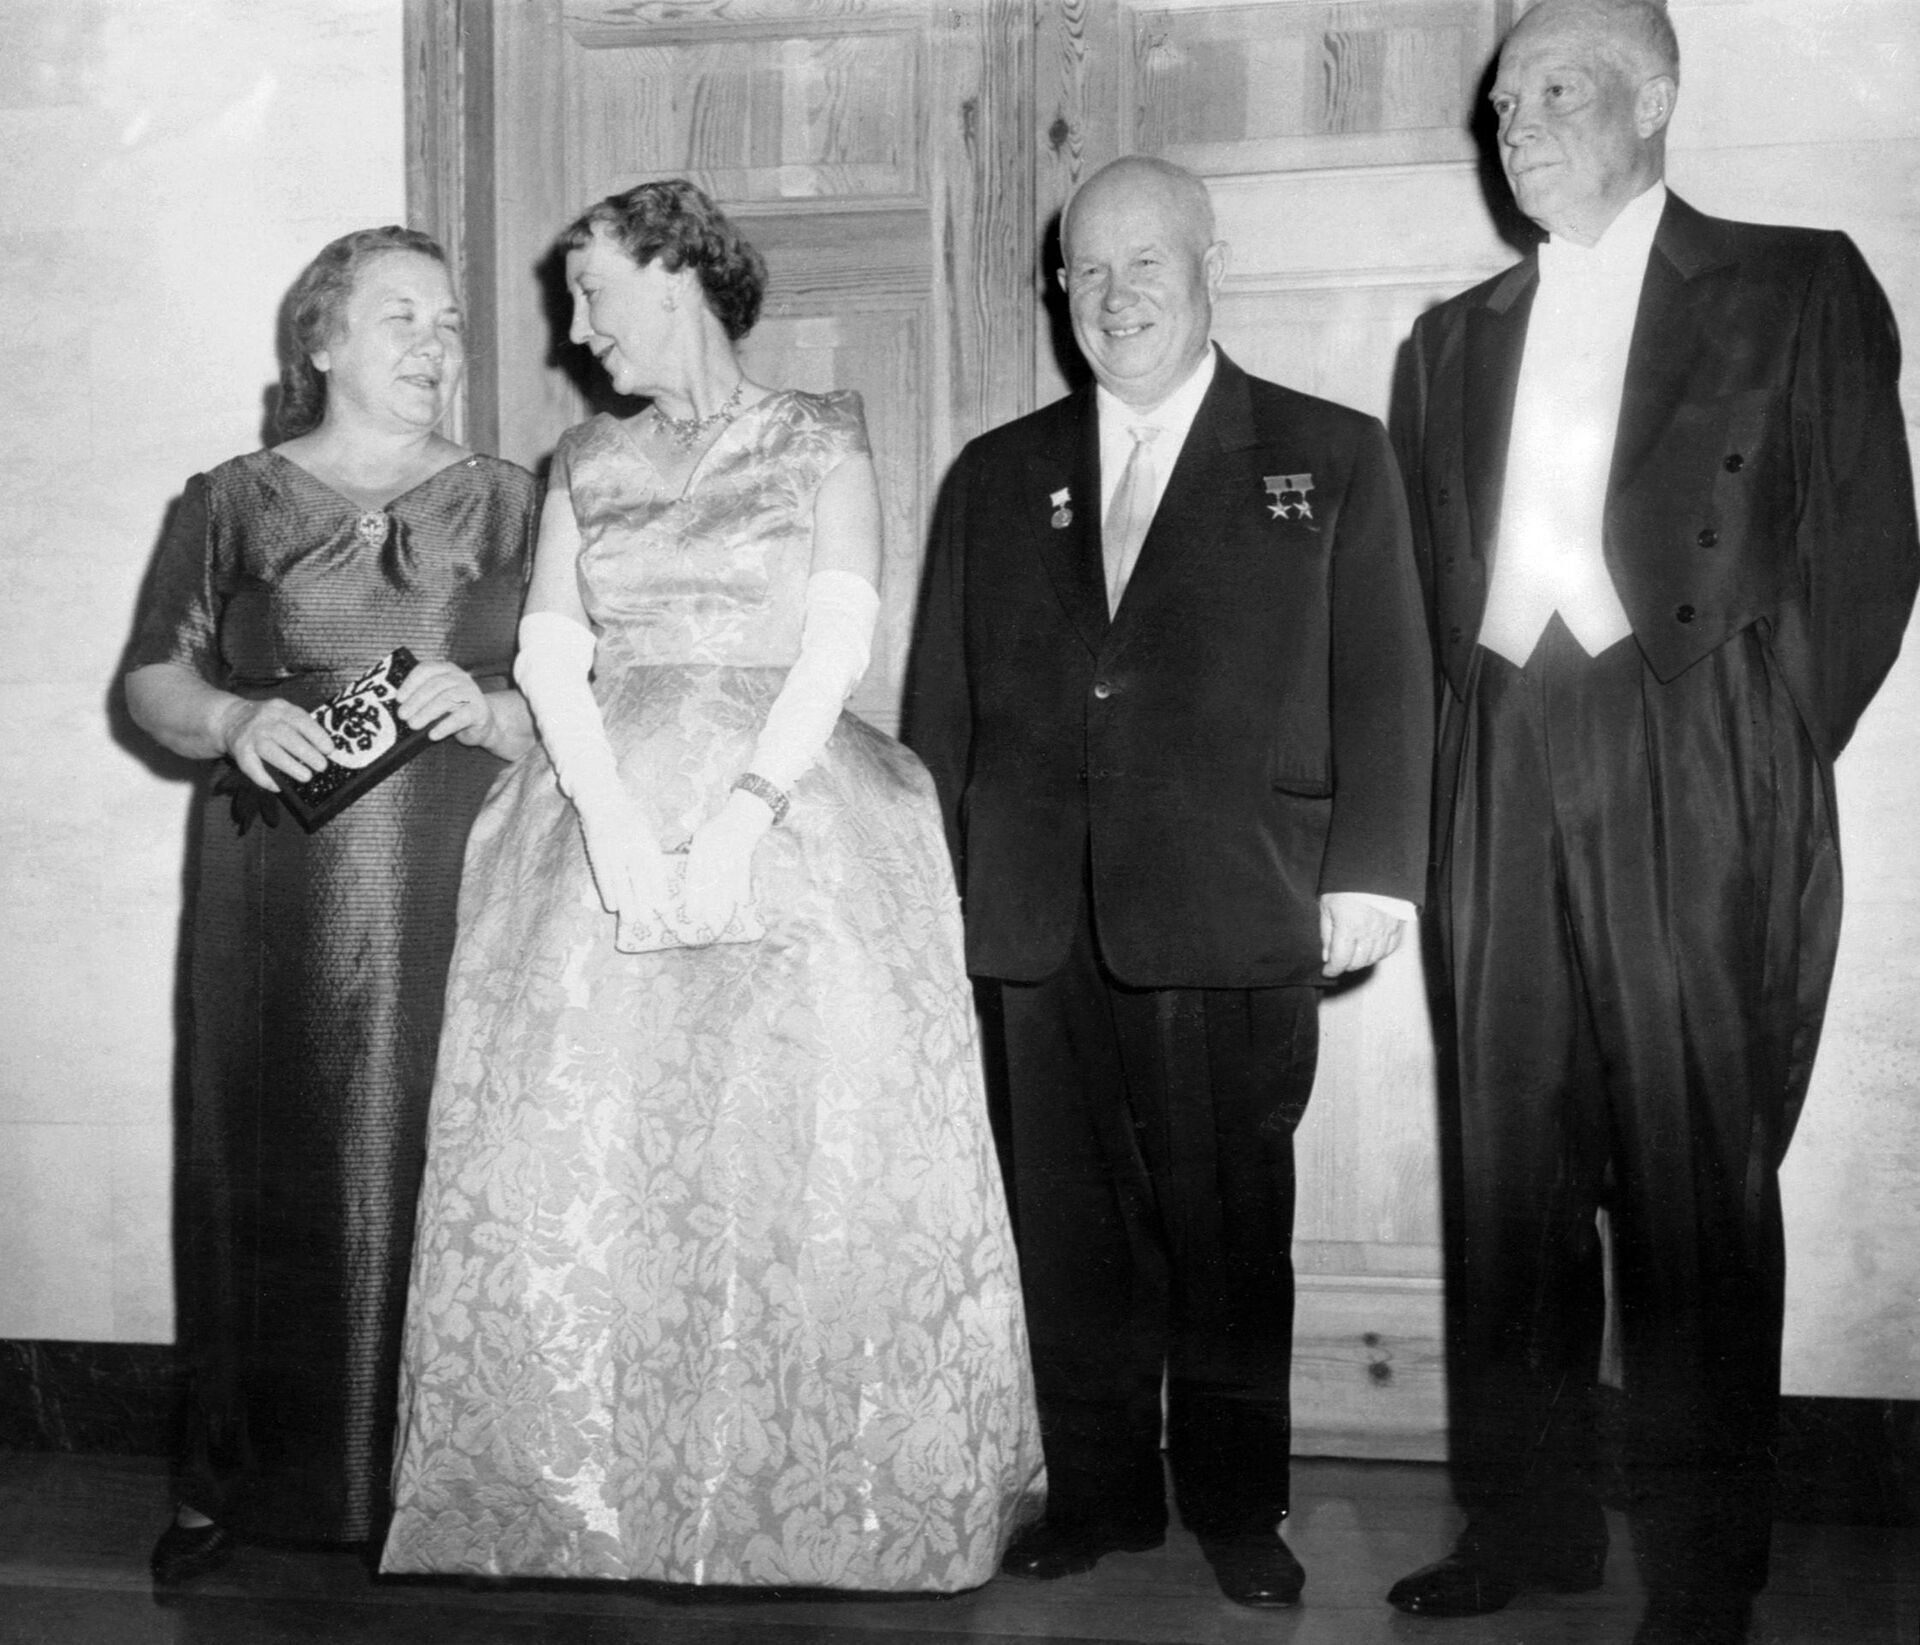 Амерички председник Двајт Ајзенхауер и совјетски лидер Никита Хрушчов са супругама приликом прве Хрушчовљеве посете Вашингтону, септембра 1959. - Sputnik Србија, 1920, 13.07.2021